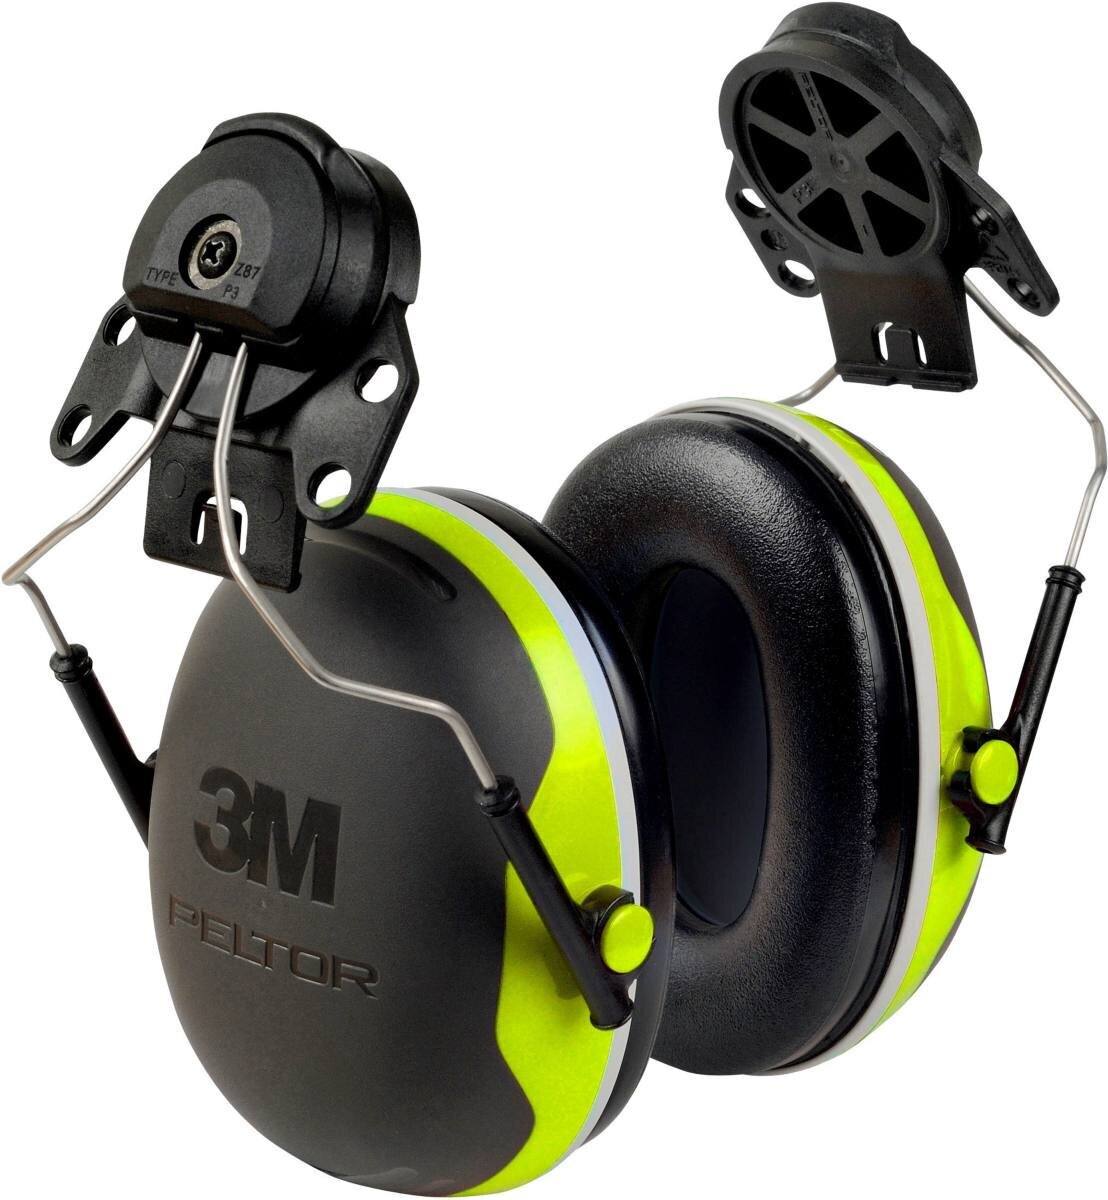 Cuffie auricolari 3M Peltor, attacco per casco X4P3E, neon, giallo, SNR = 32 dB con adattatore per casco P3E (per tutti i caschi 3M, tranne G2000)